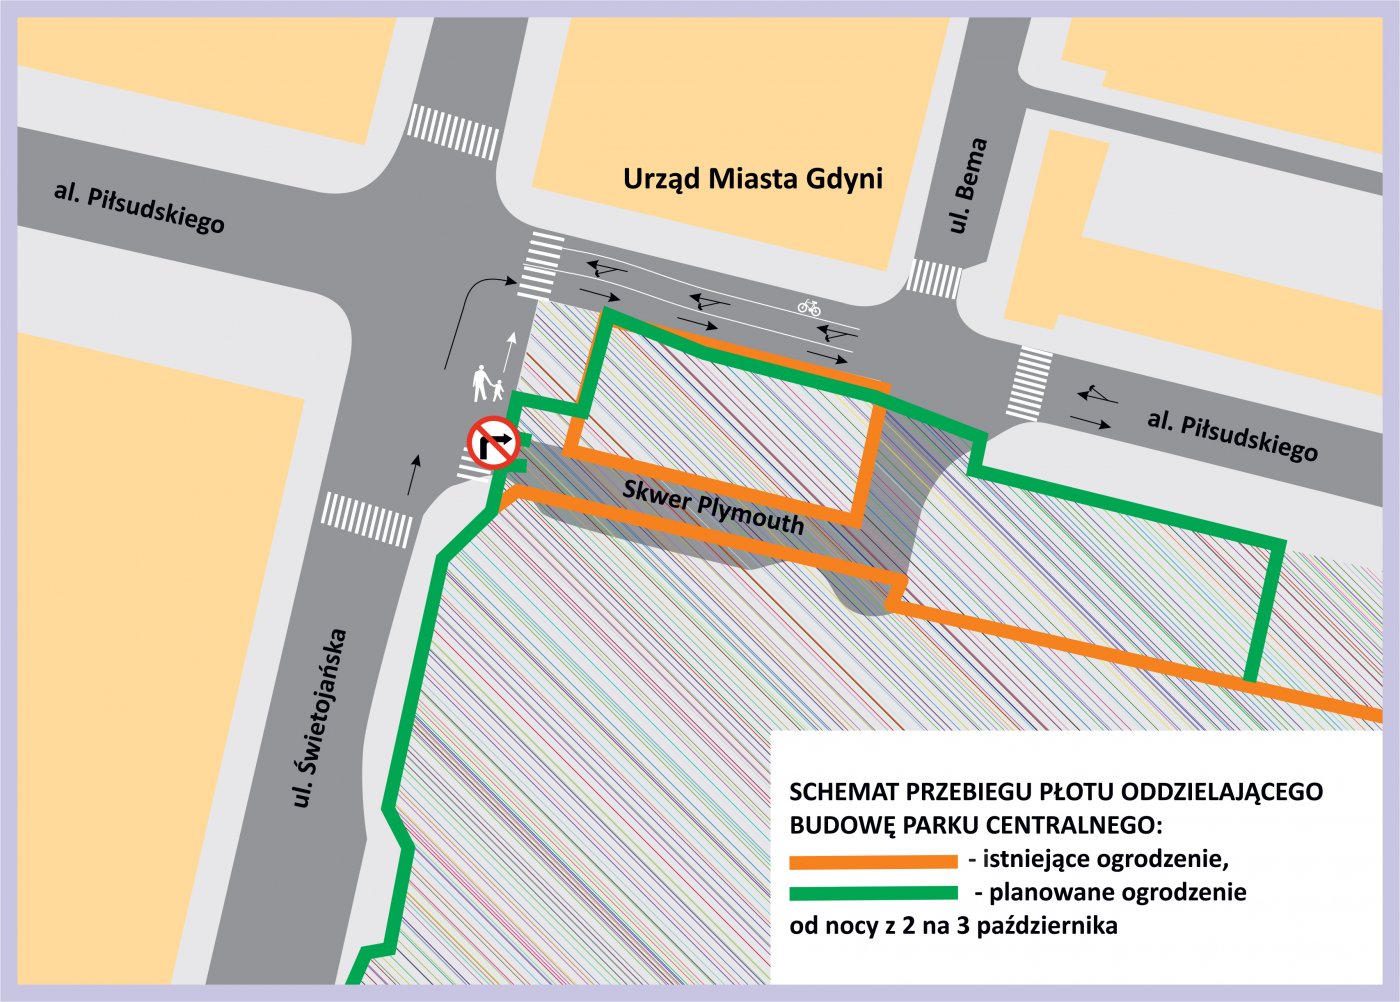 Schemat przebiegu ogrodzenia oddzielającego budowę Parku Centralnego: pomarańczowy - istniejące ogrodzenie, zielony - planowane ogrodzenie od nocy z 2 na 3 października b. r.